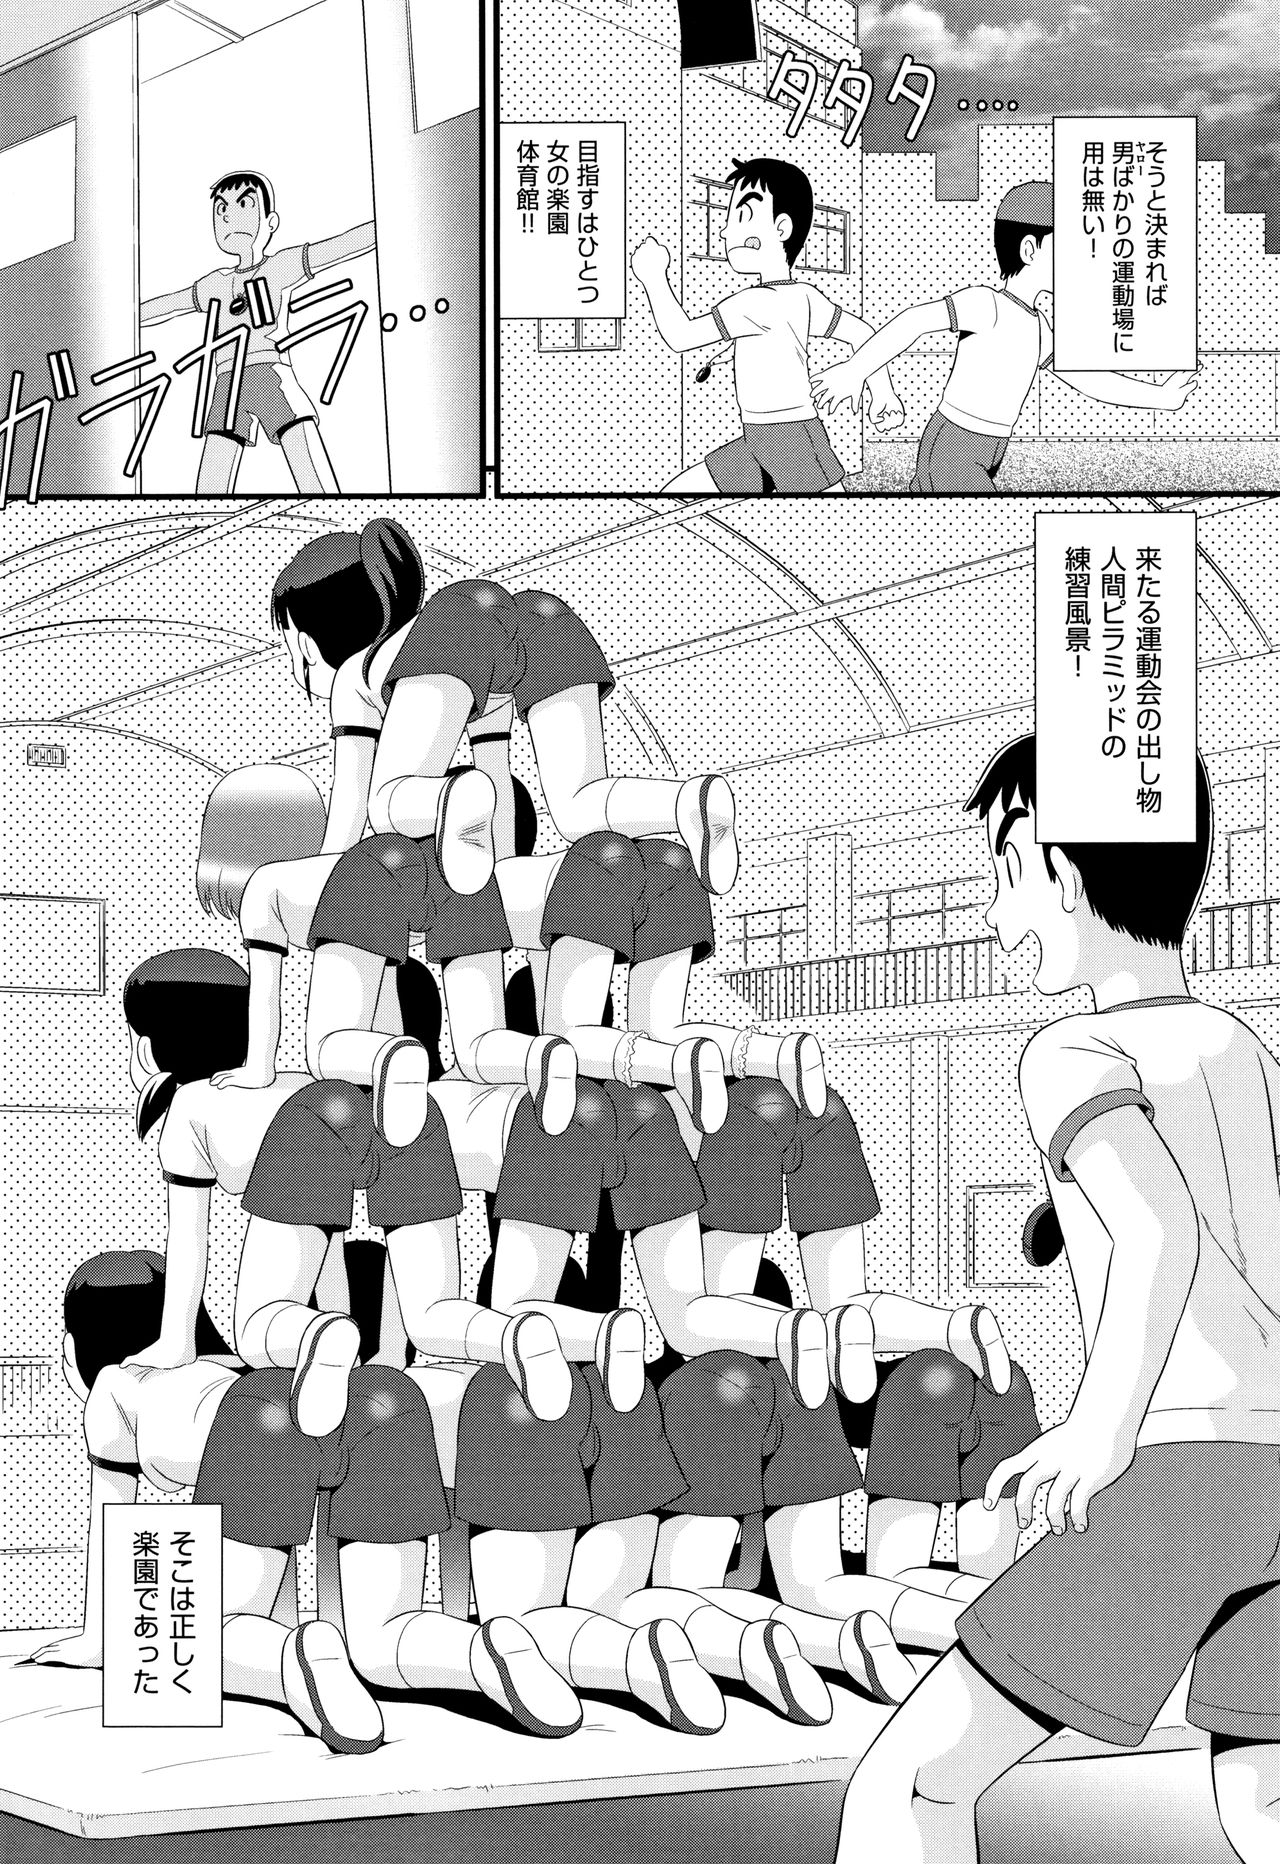 [Anthology] Shoujo Kumikyoku 13 page 7 full